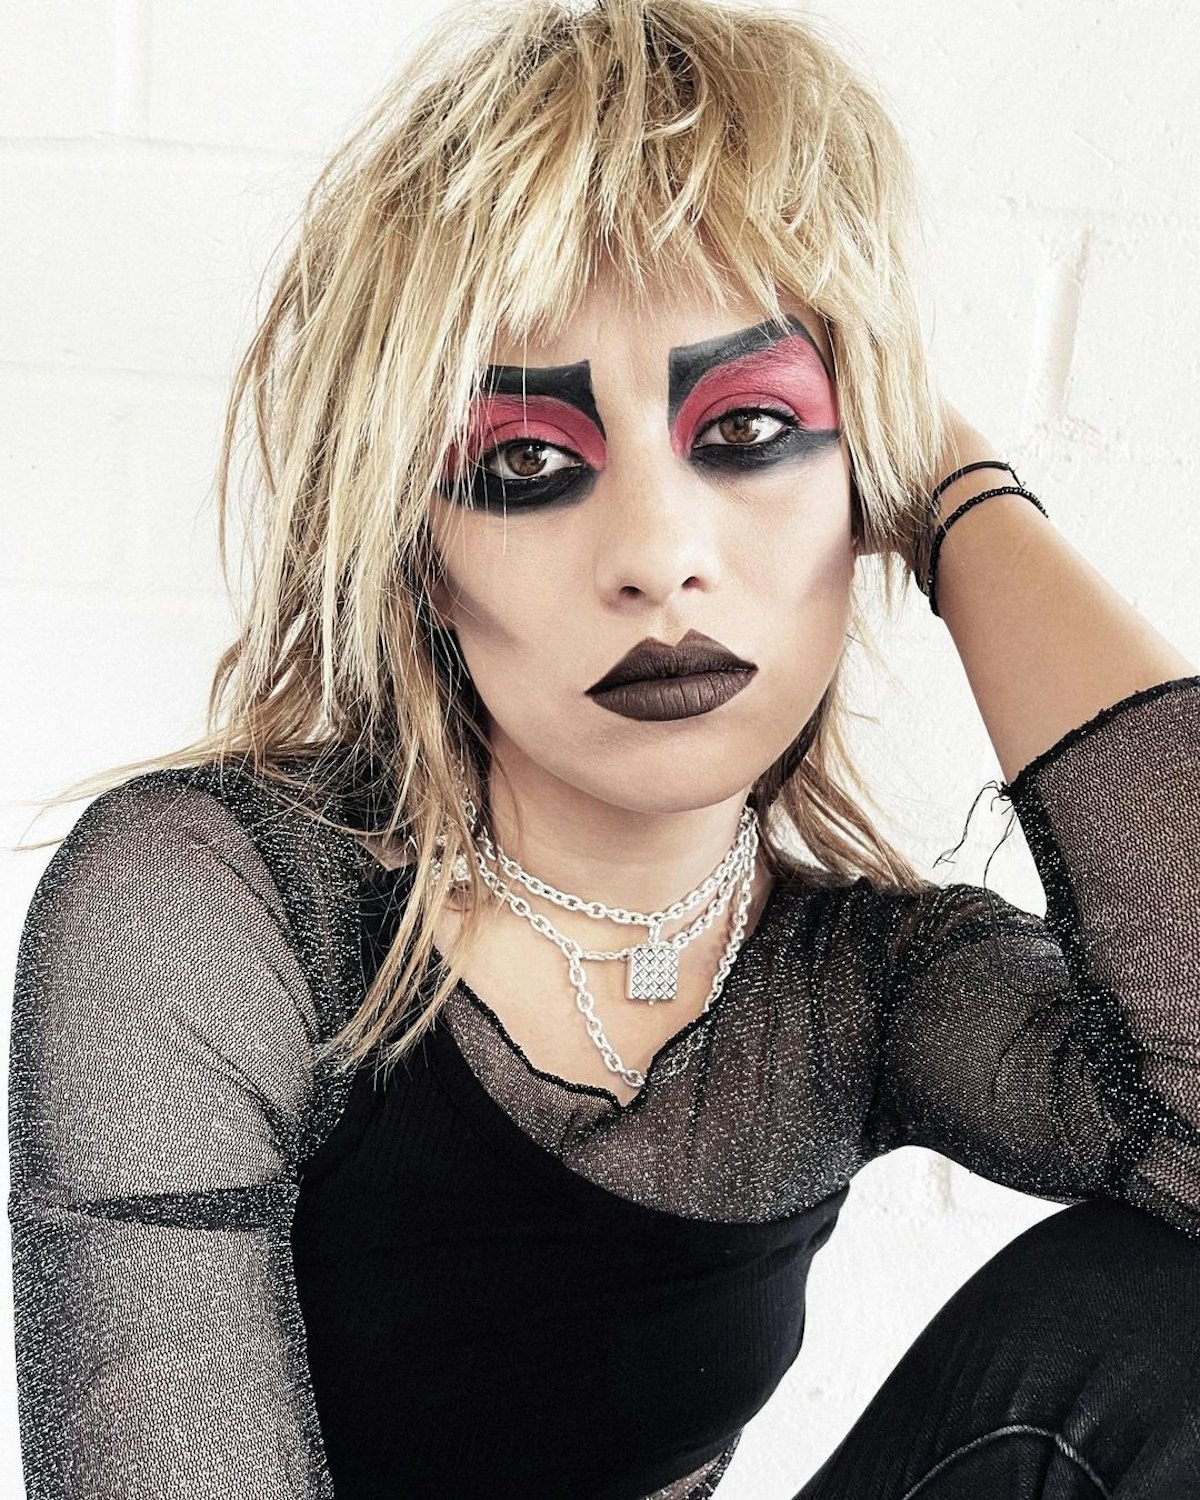 An easy Halloween makeup look? A punk rocker.